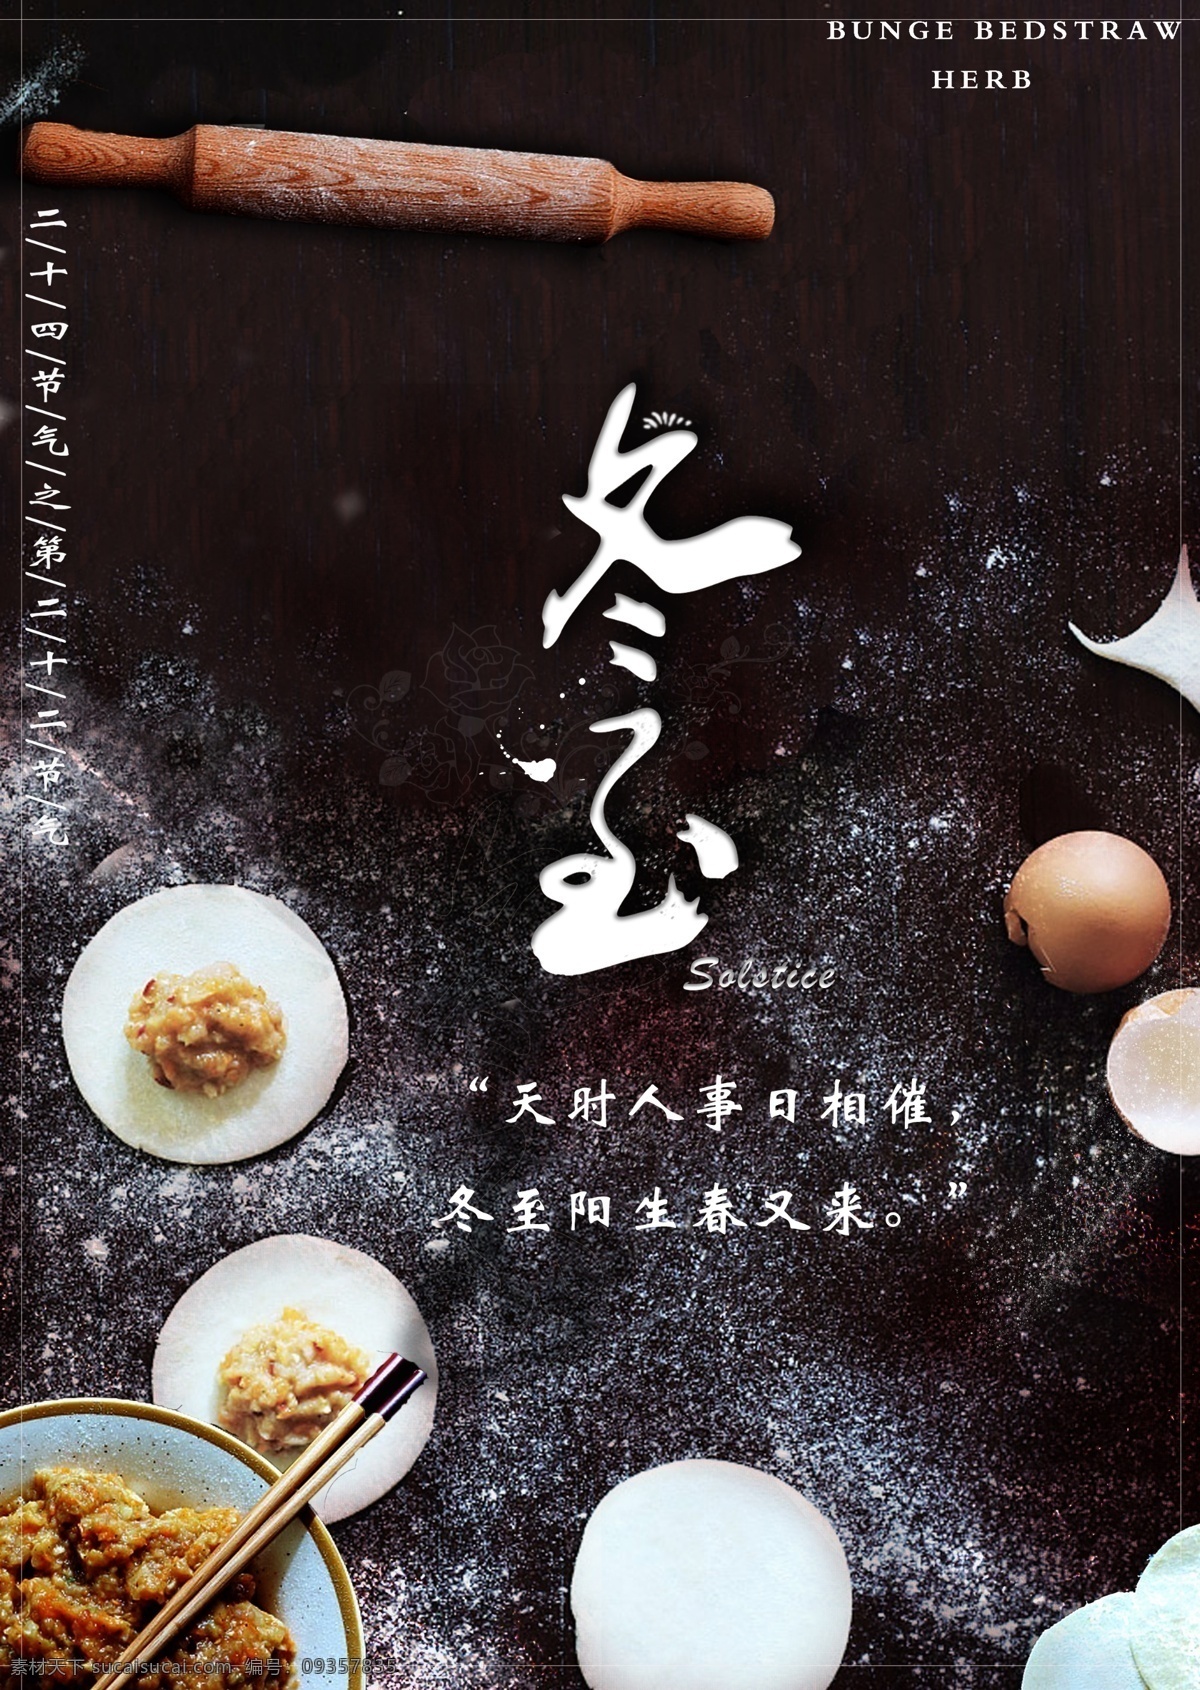 冬至 宣传海报 格式 冬天 过节 简约 饺子 精致 清新